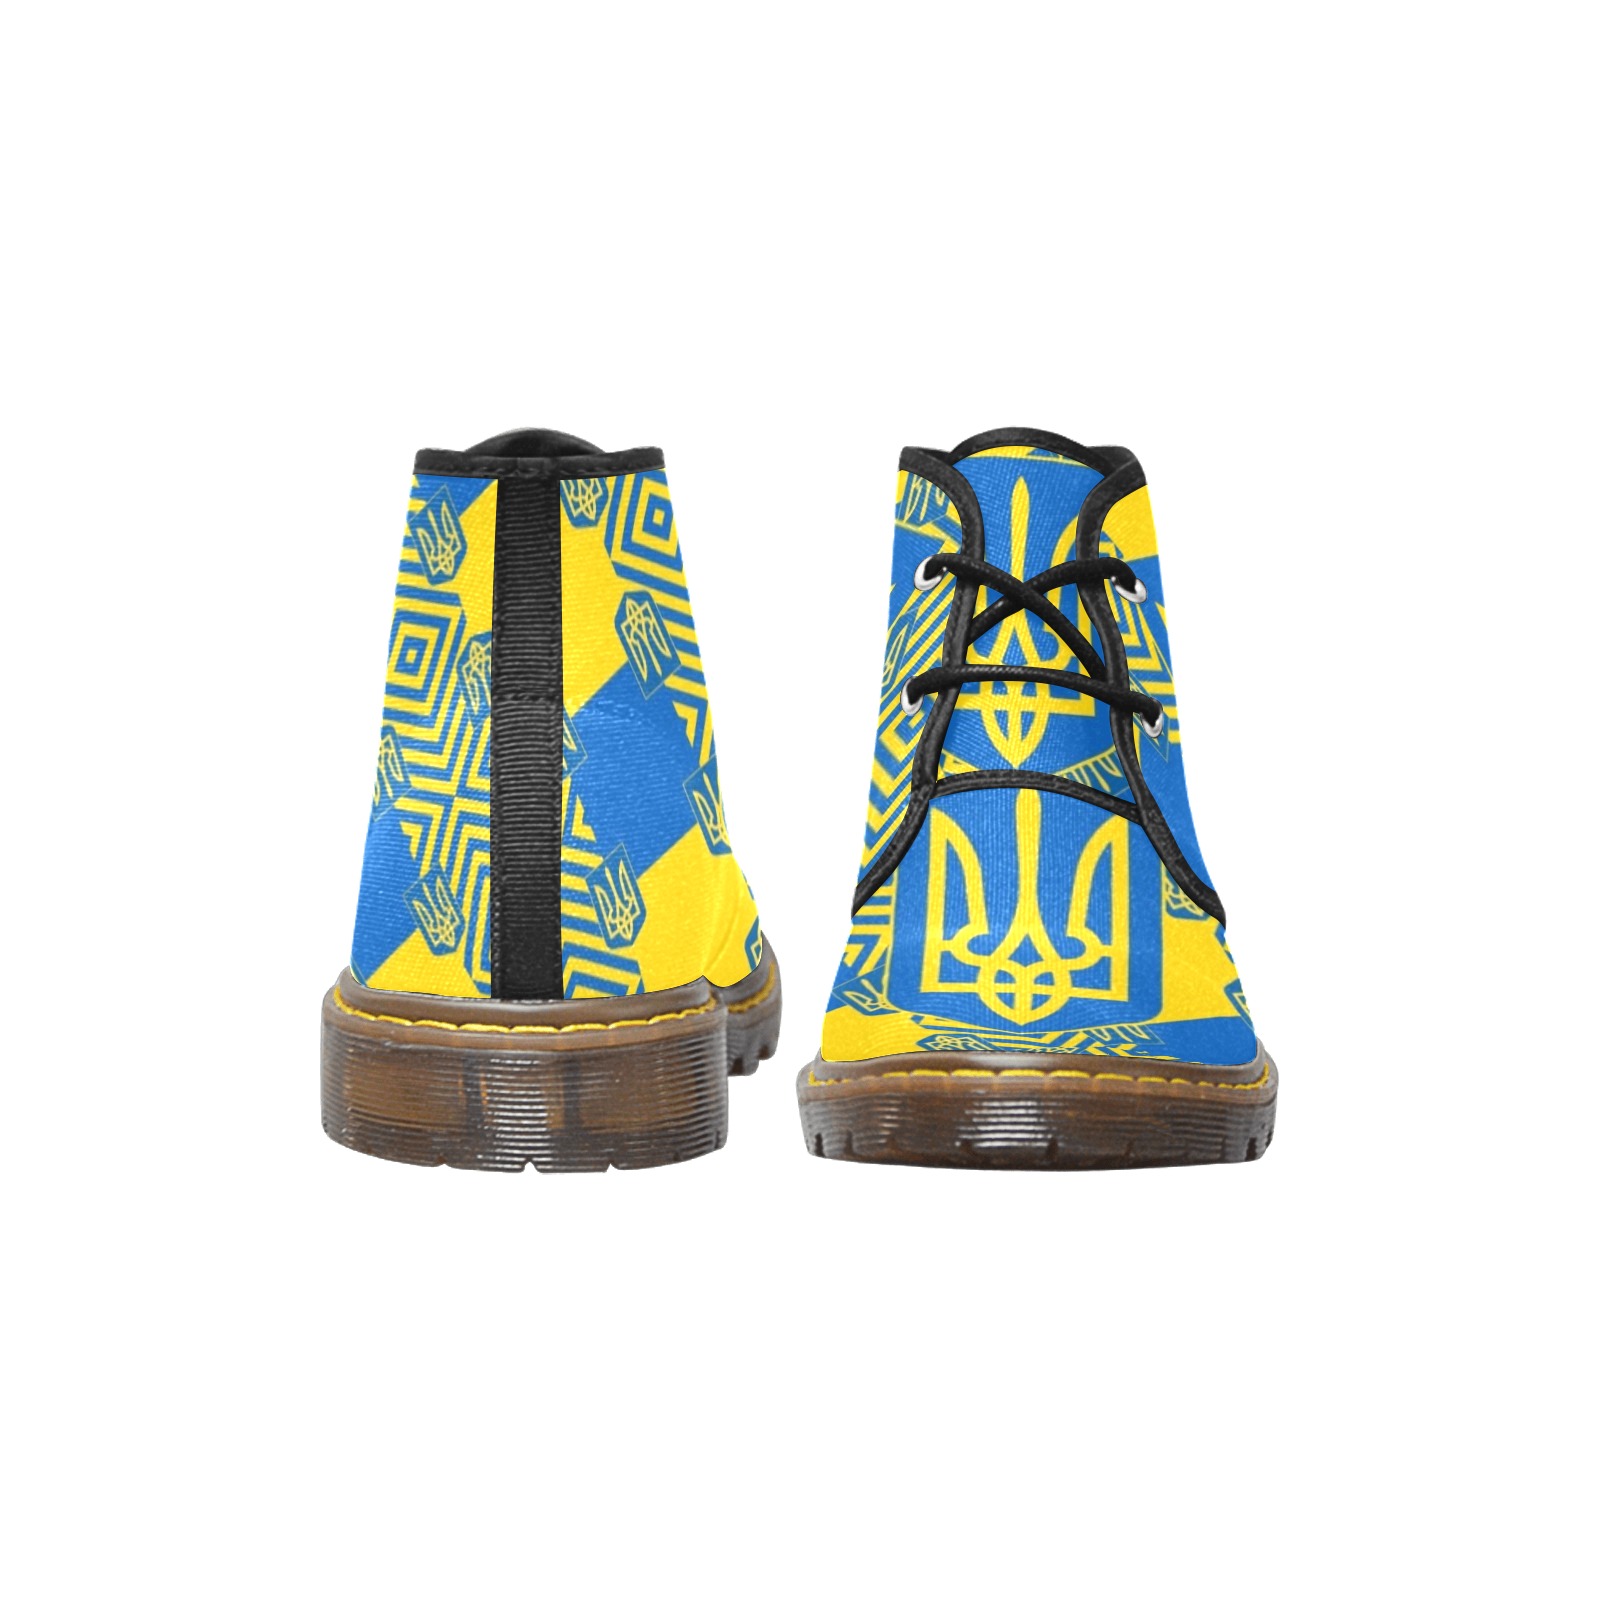 UKRAINE 2 Women's Canvas Chukka Boots (Model 2402-1)